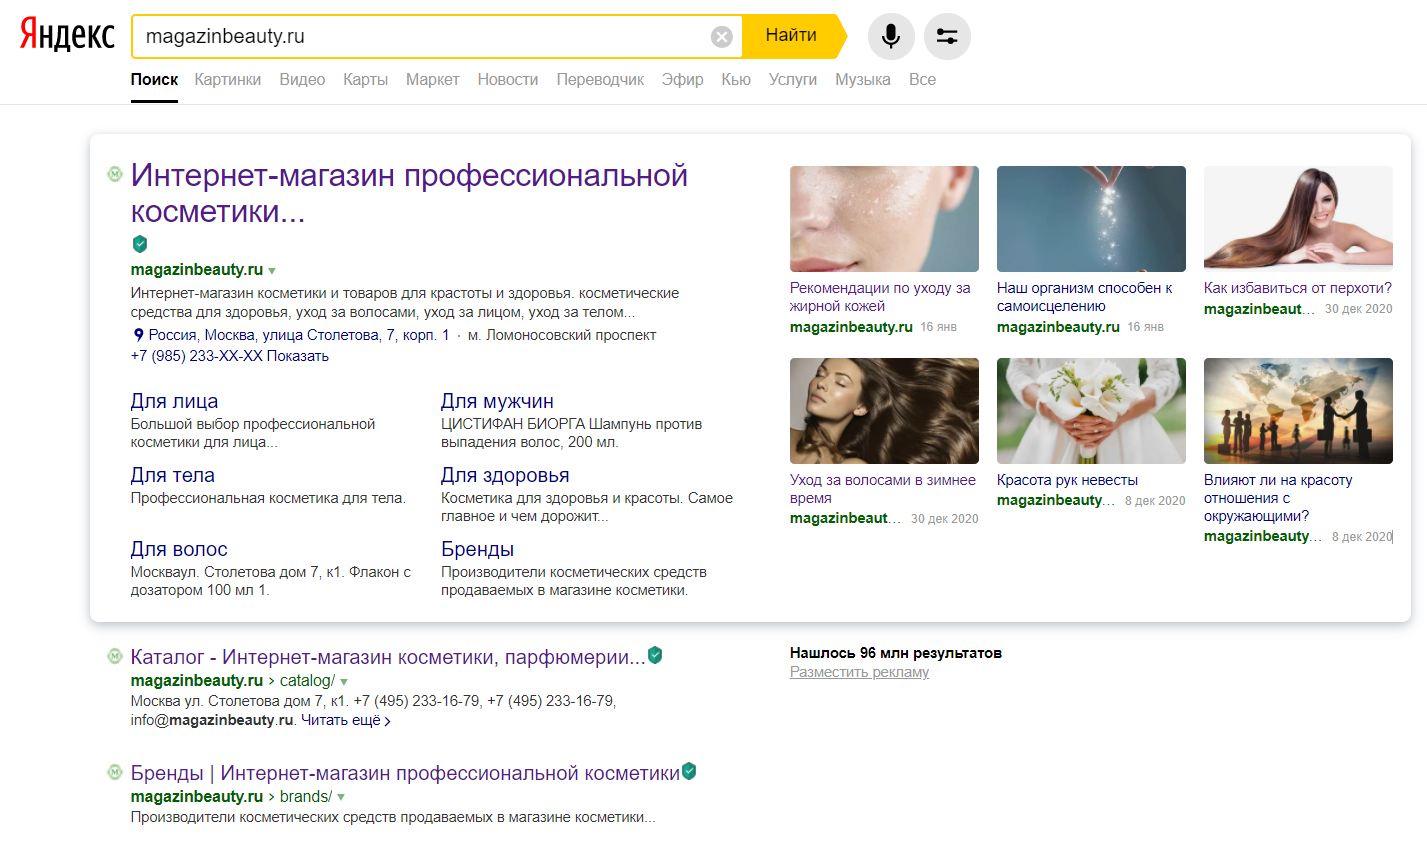 Как сделать красивый виджет для Яндекса